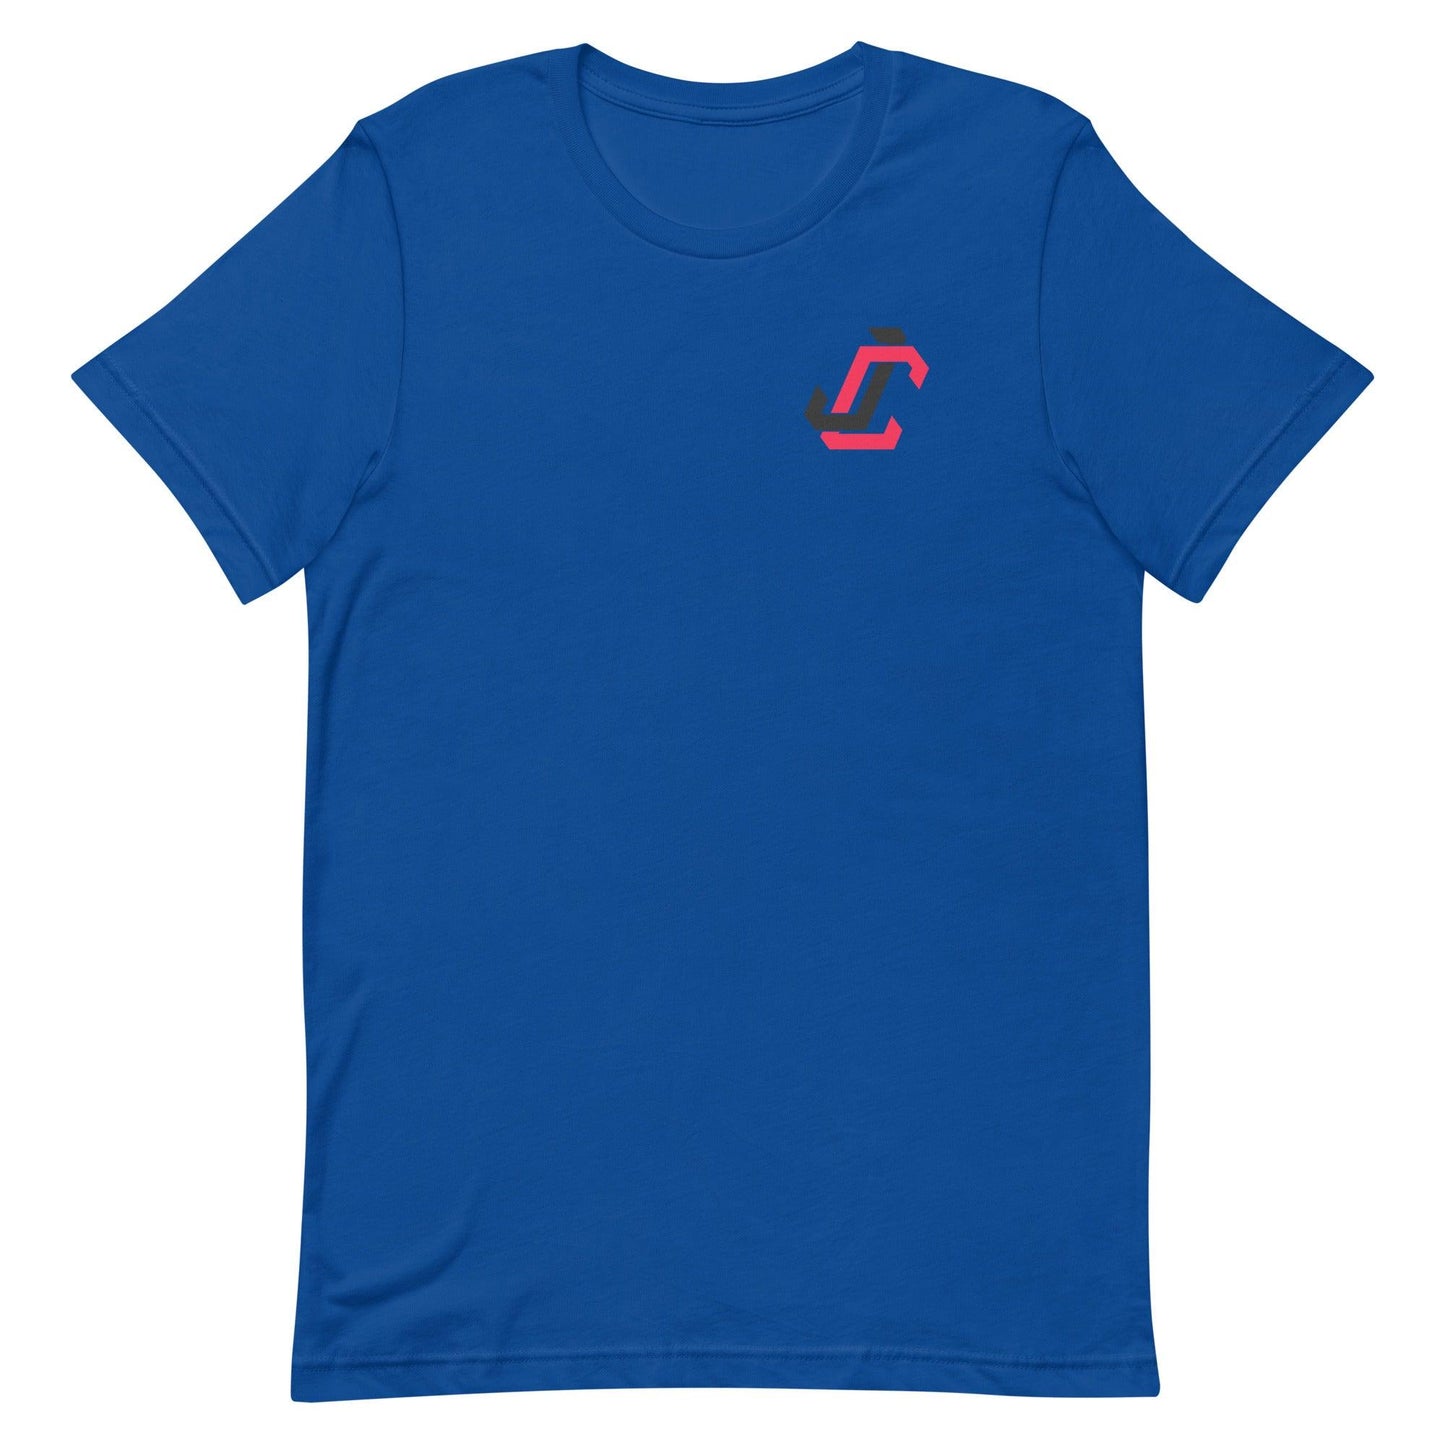 Jack Clark "JC" t-shirt - Fan Arch